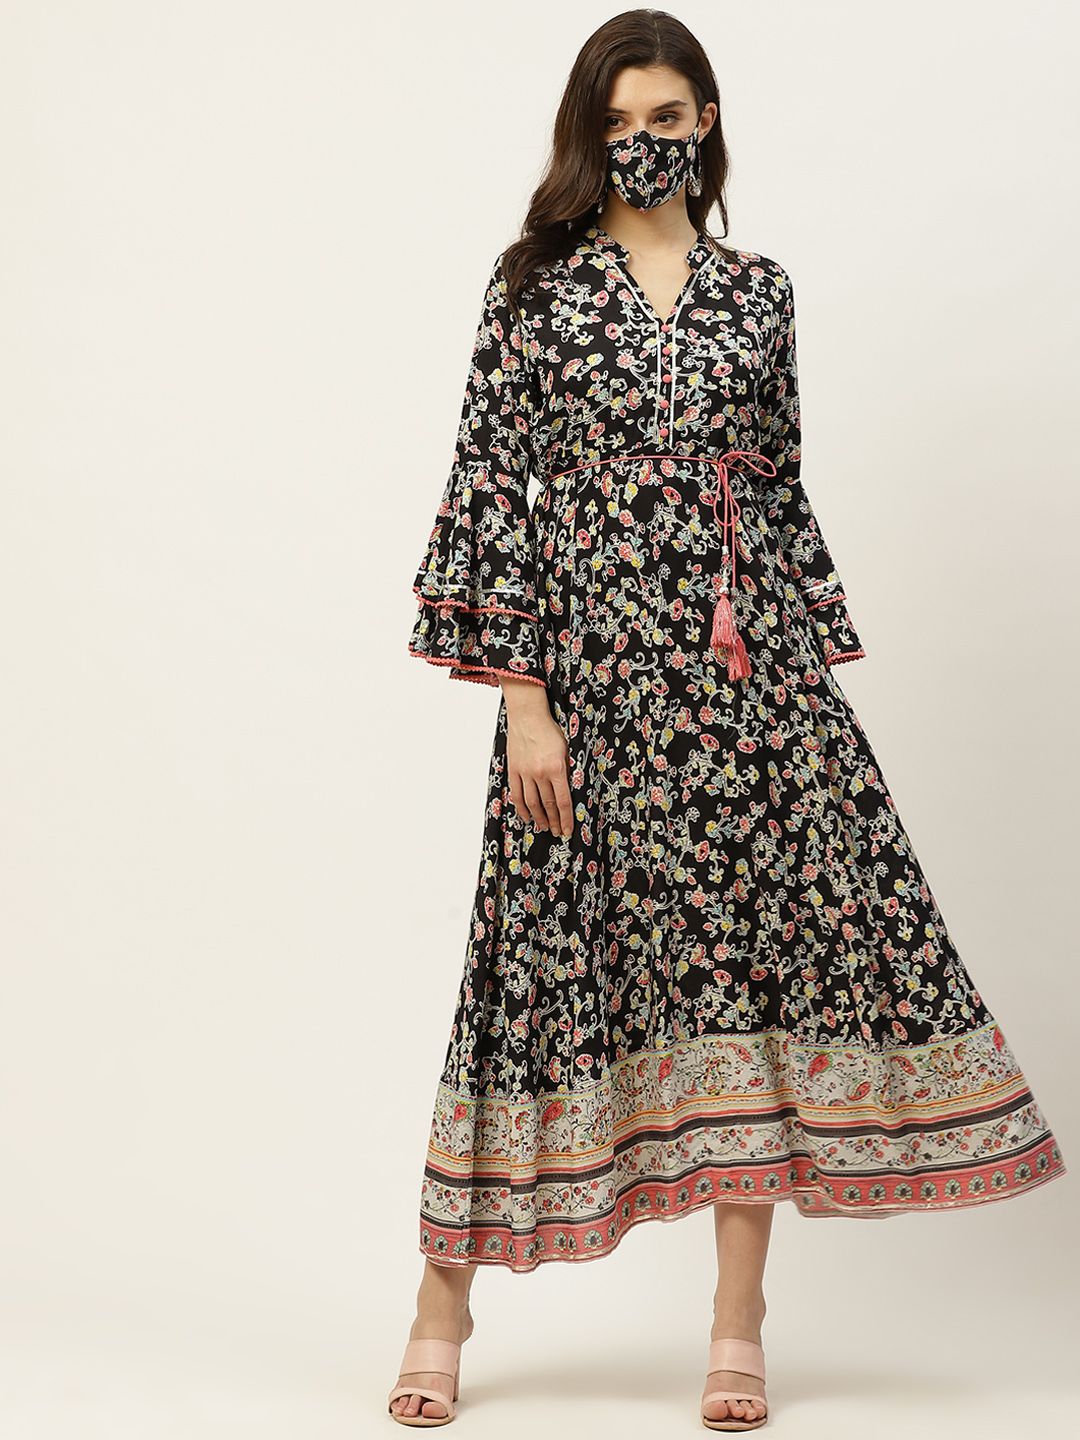 Juniper Black & White Printed Liva Ethnic Maxi Dress Price in India